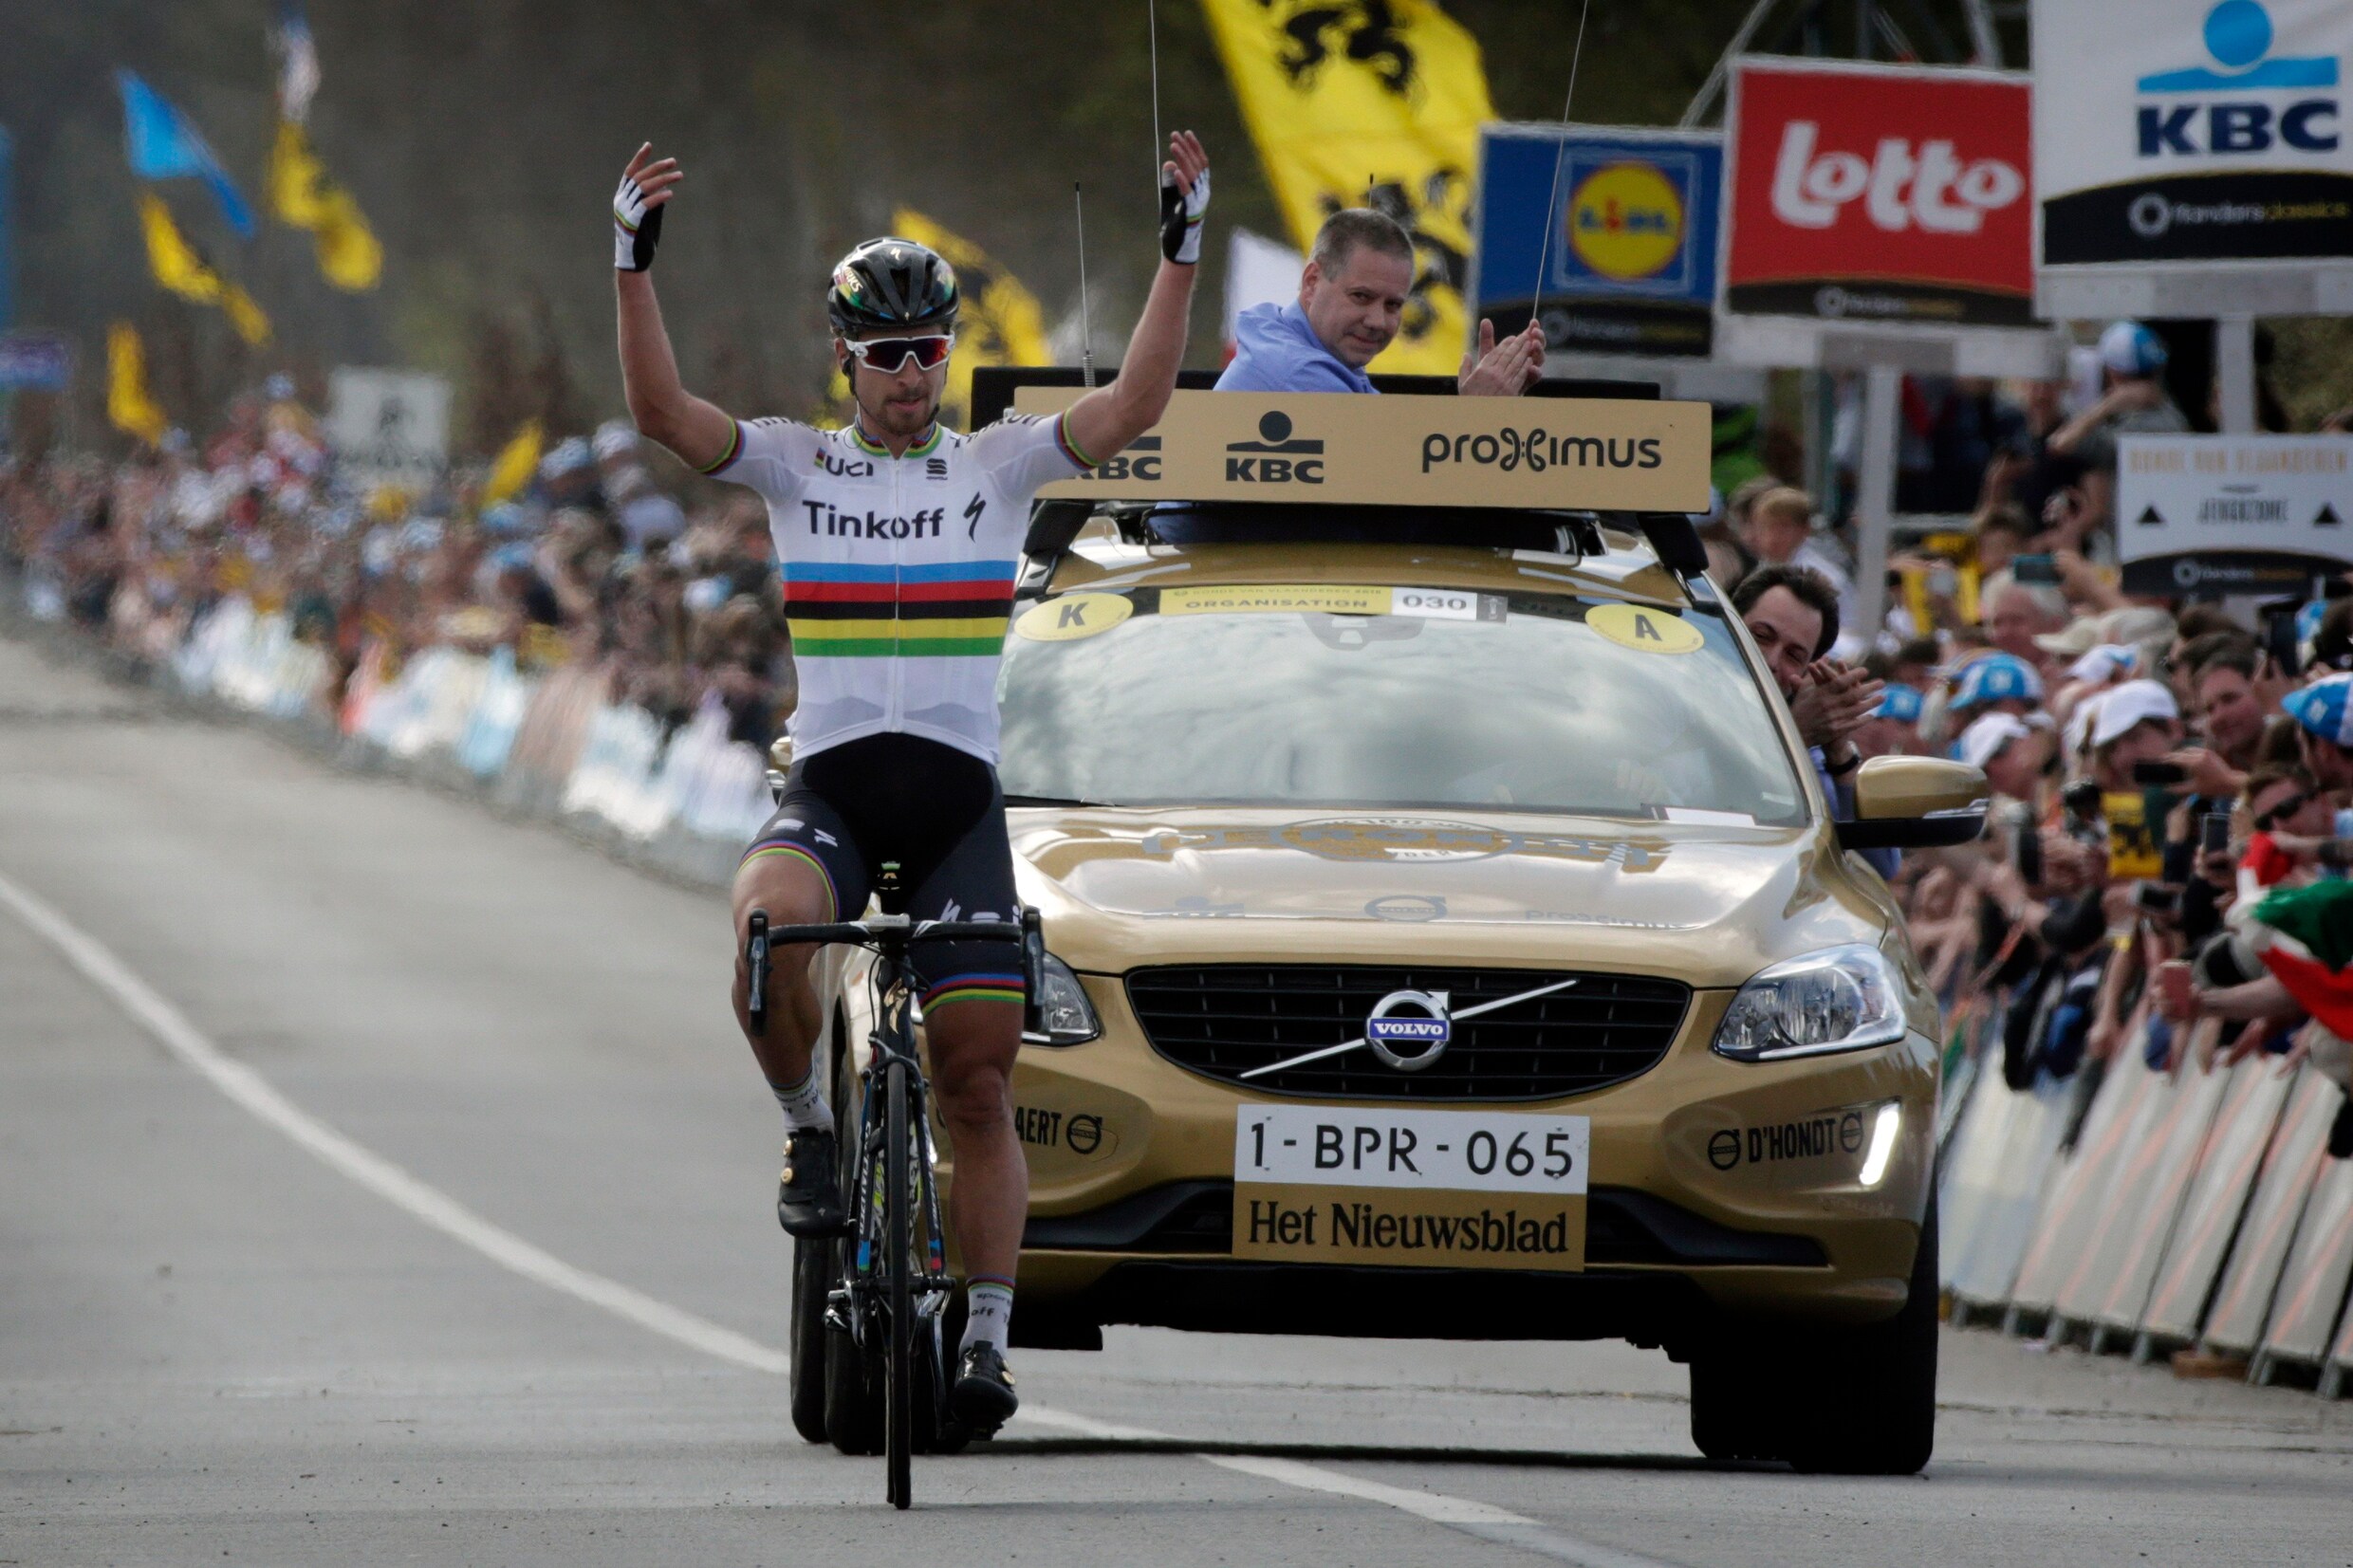 Ronde van Vlaanderen kiest voor zeven "Dorpen van de Ronde" als vaste aanloopstrook topklassieker